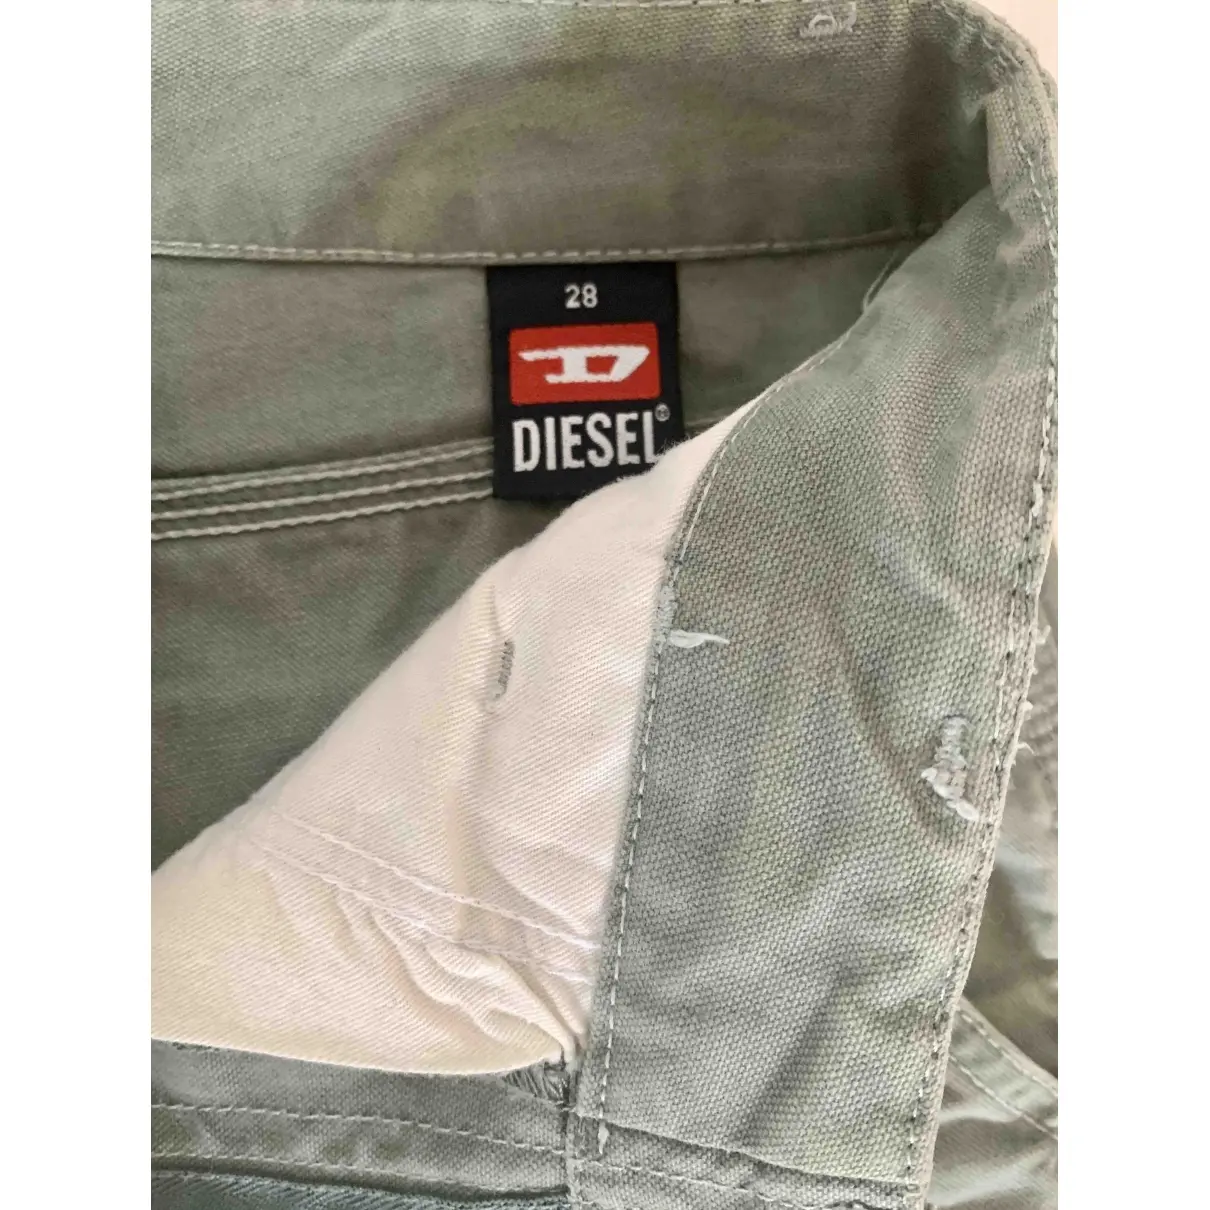 Buy Diesel Large pants online